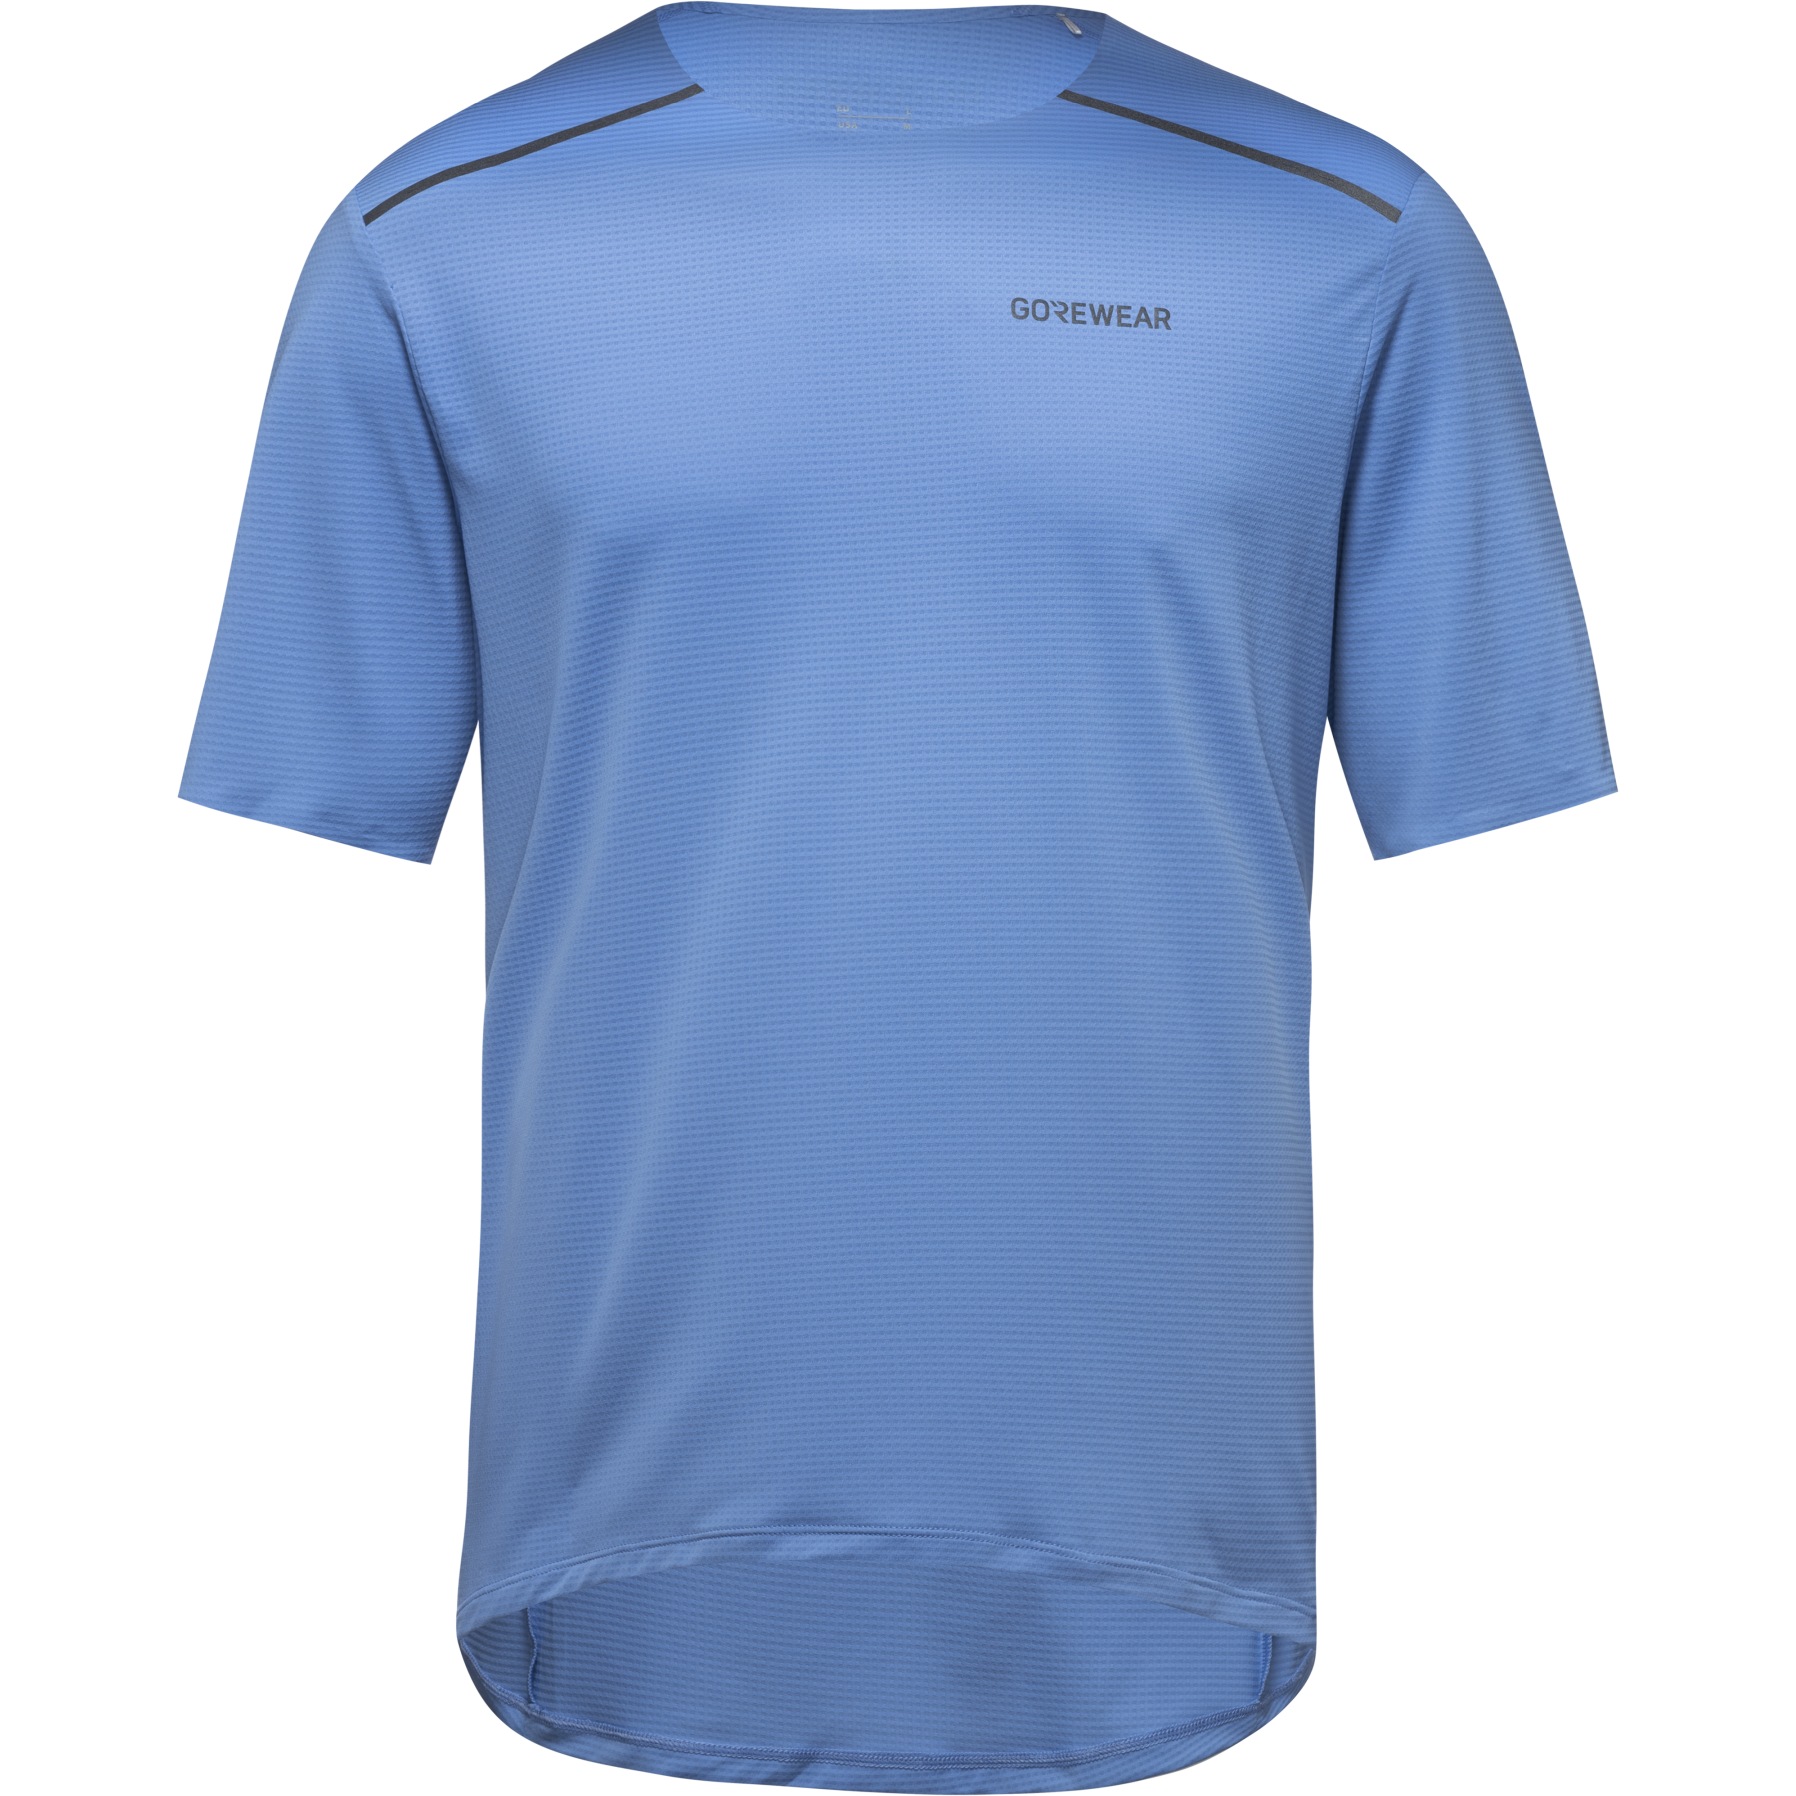 Produktbild von GOREWEAR Contest 2.0 T-Shirt Herren - scrub blue BV00